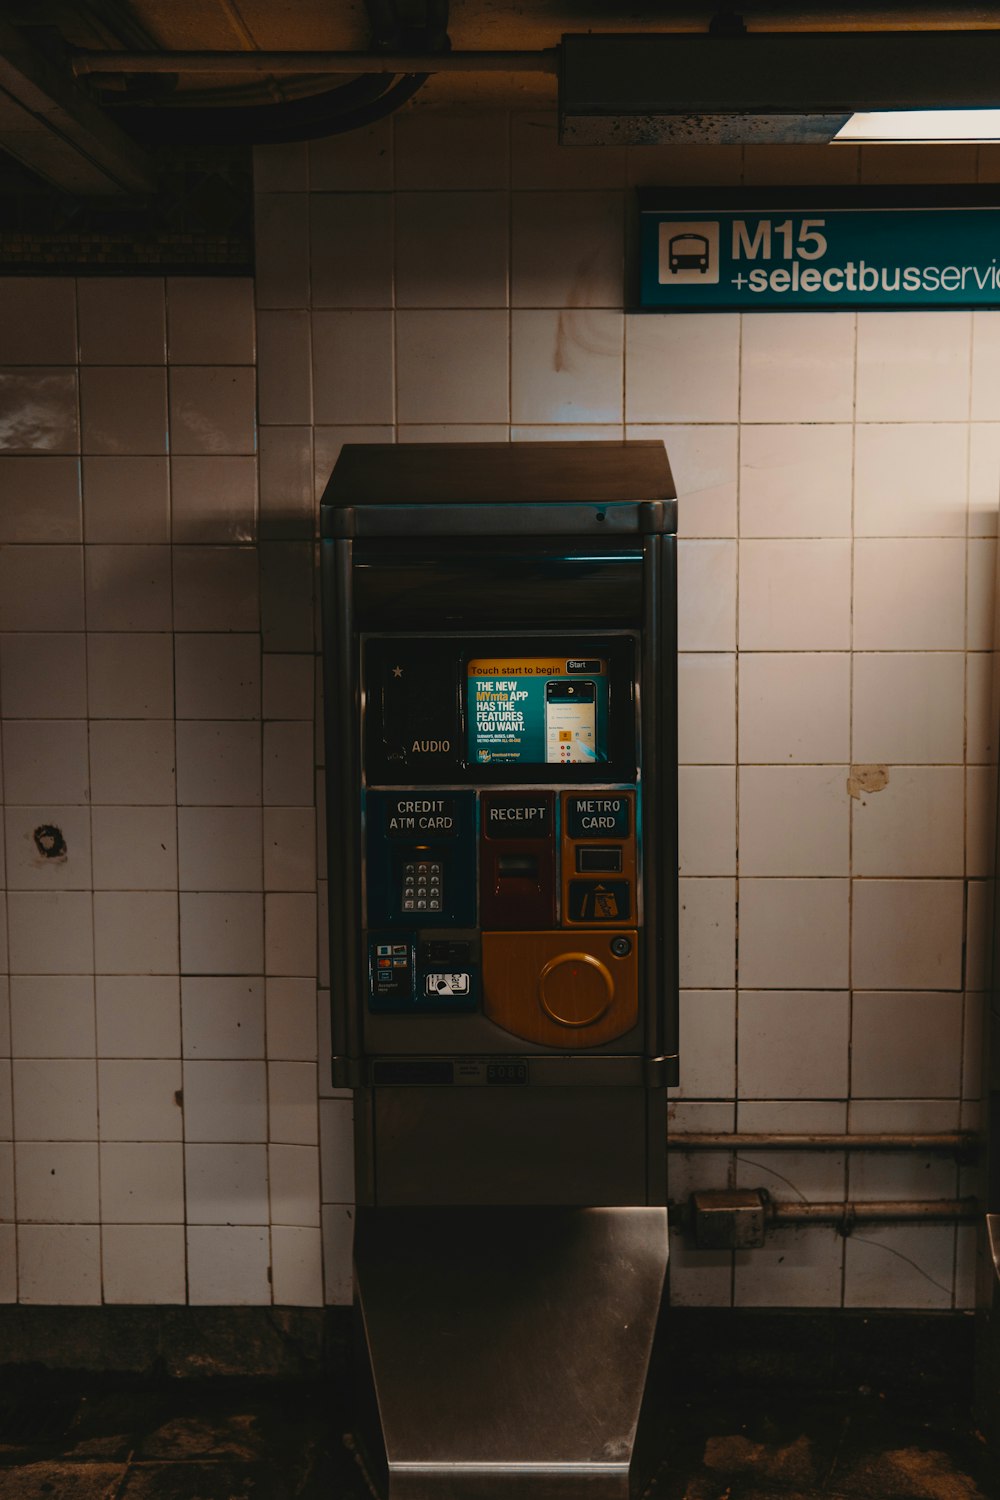 vending machine under M15 signage